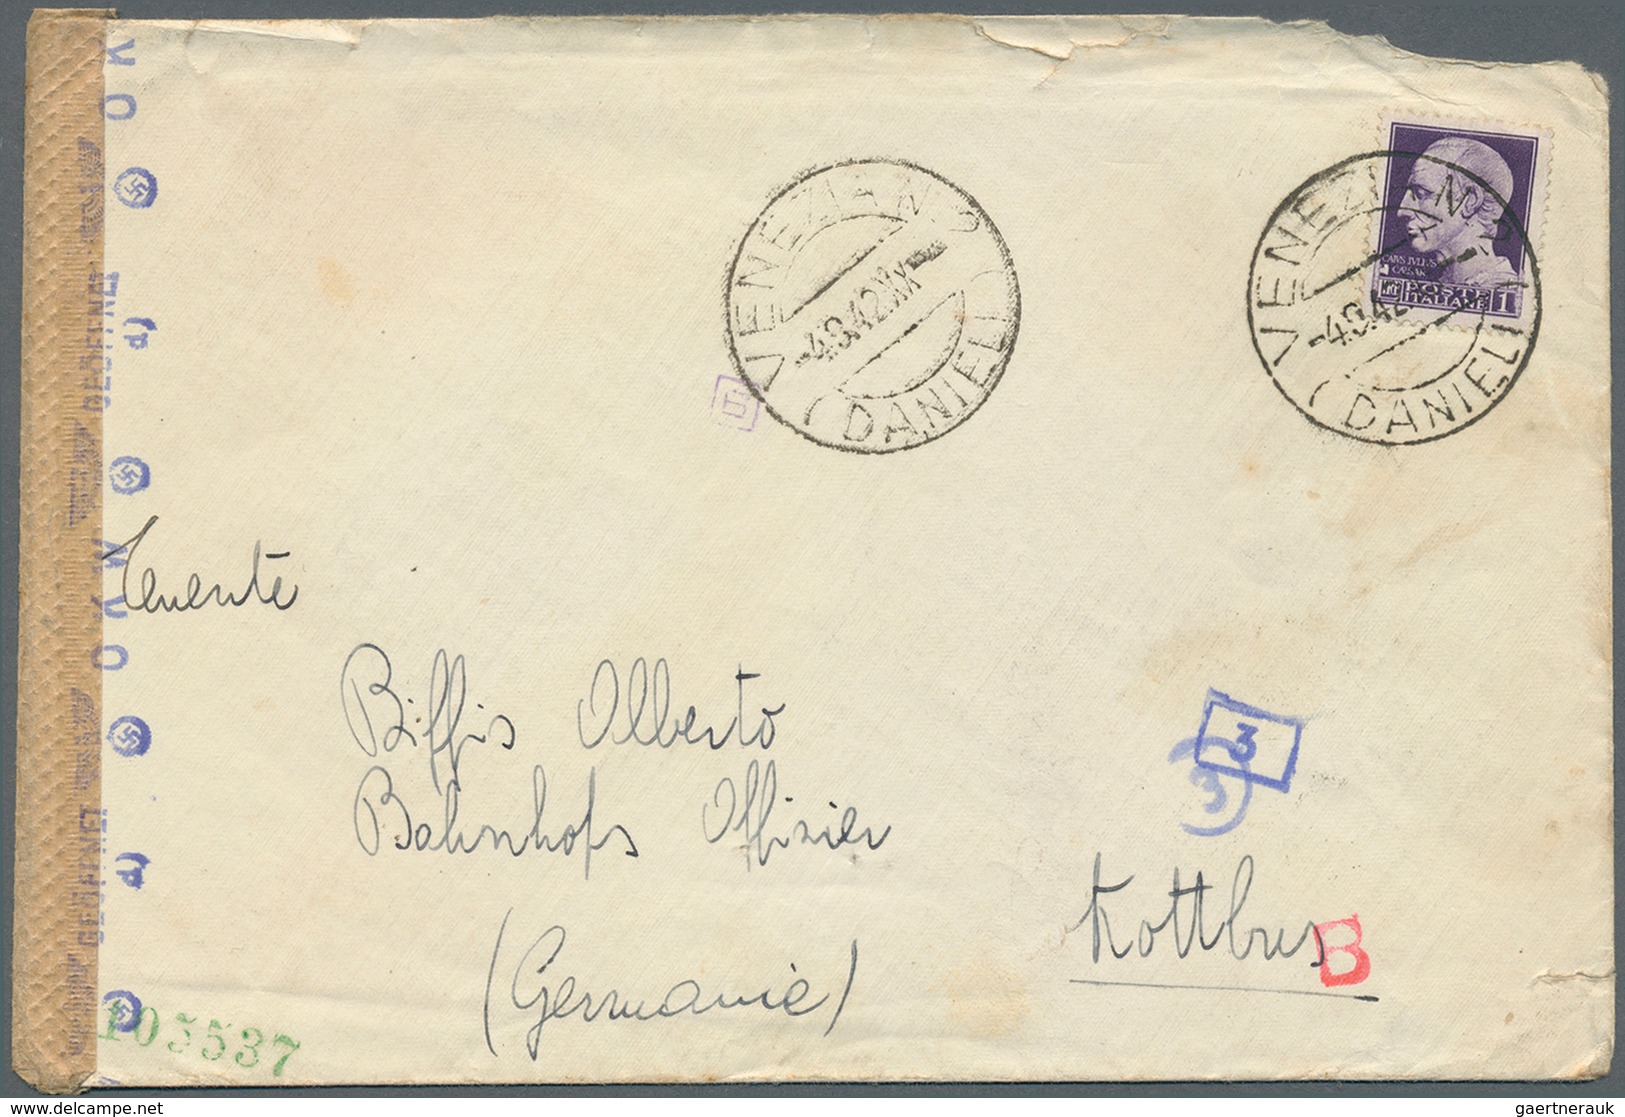 Feldpost 2. Weltkrieg: 1939/1945, 66 teils bessere Belege, mit Briefen aus Italien an Feldpostnummer